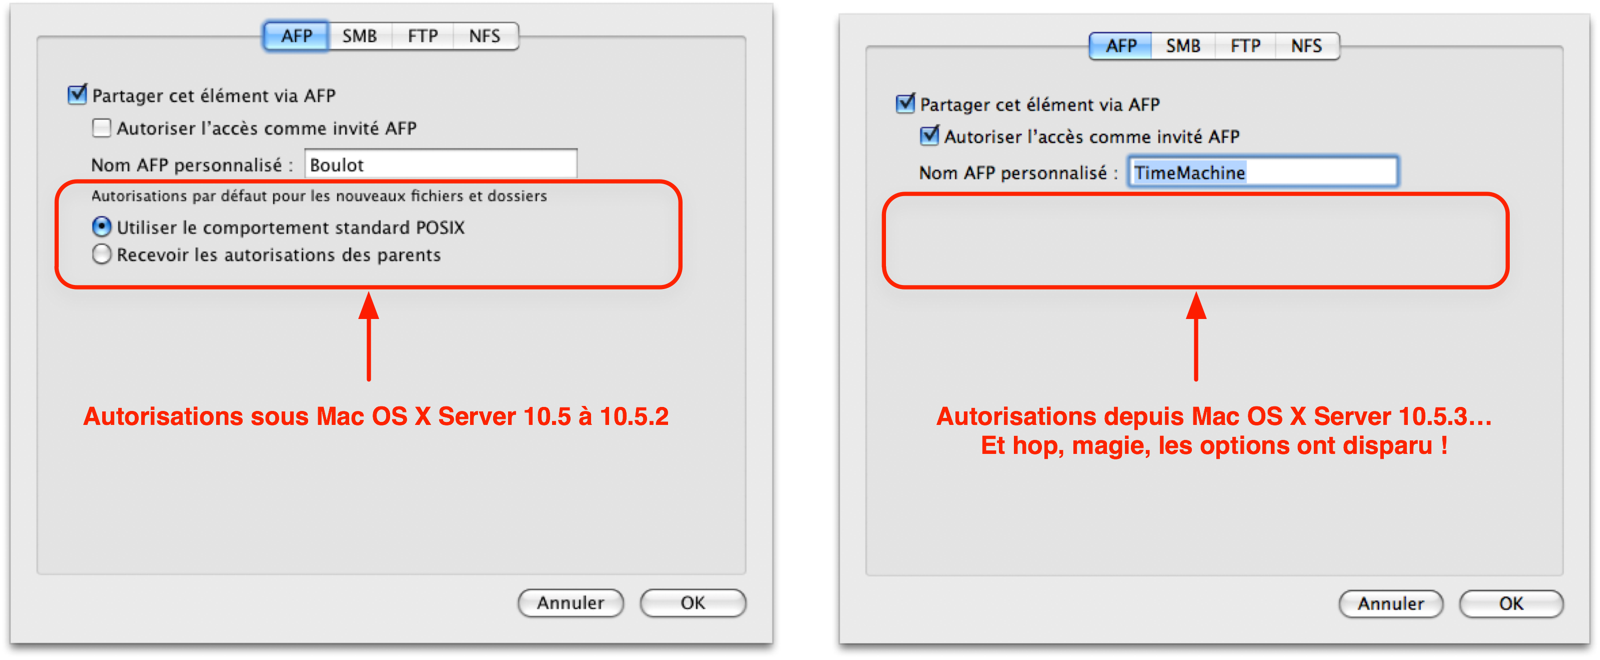 Depuis Mac OS X Server 10.5.3, l\'option d\'héritage des permissions a disparu